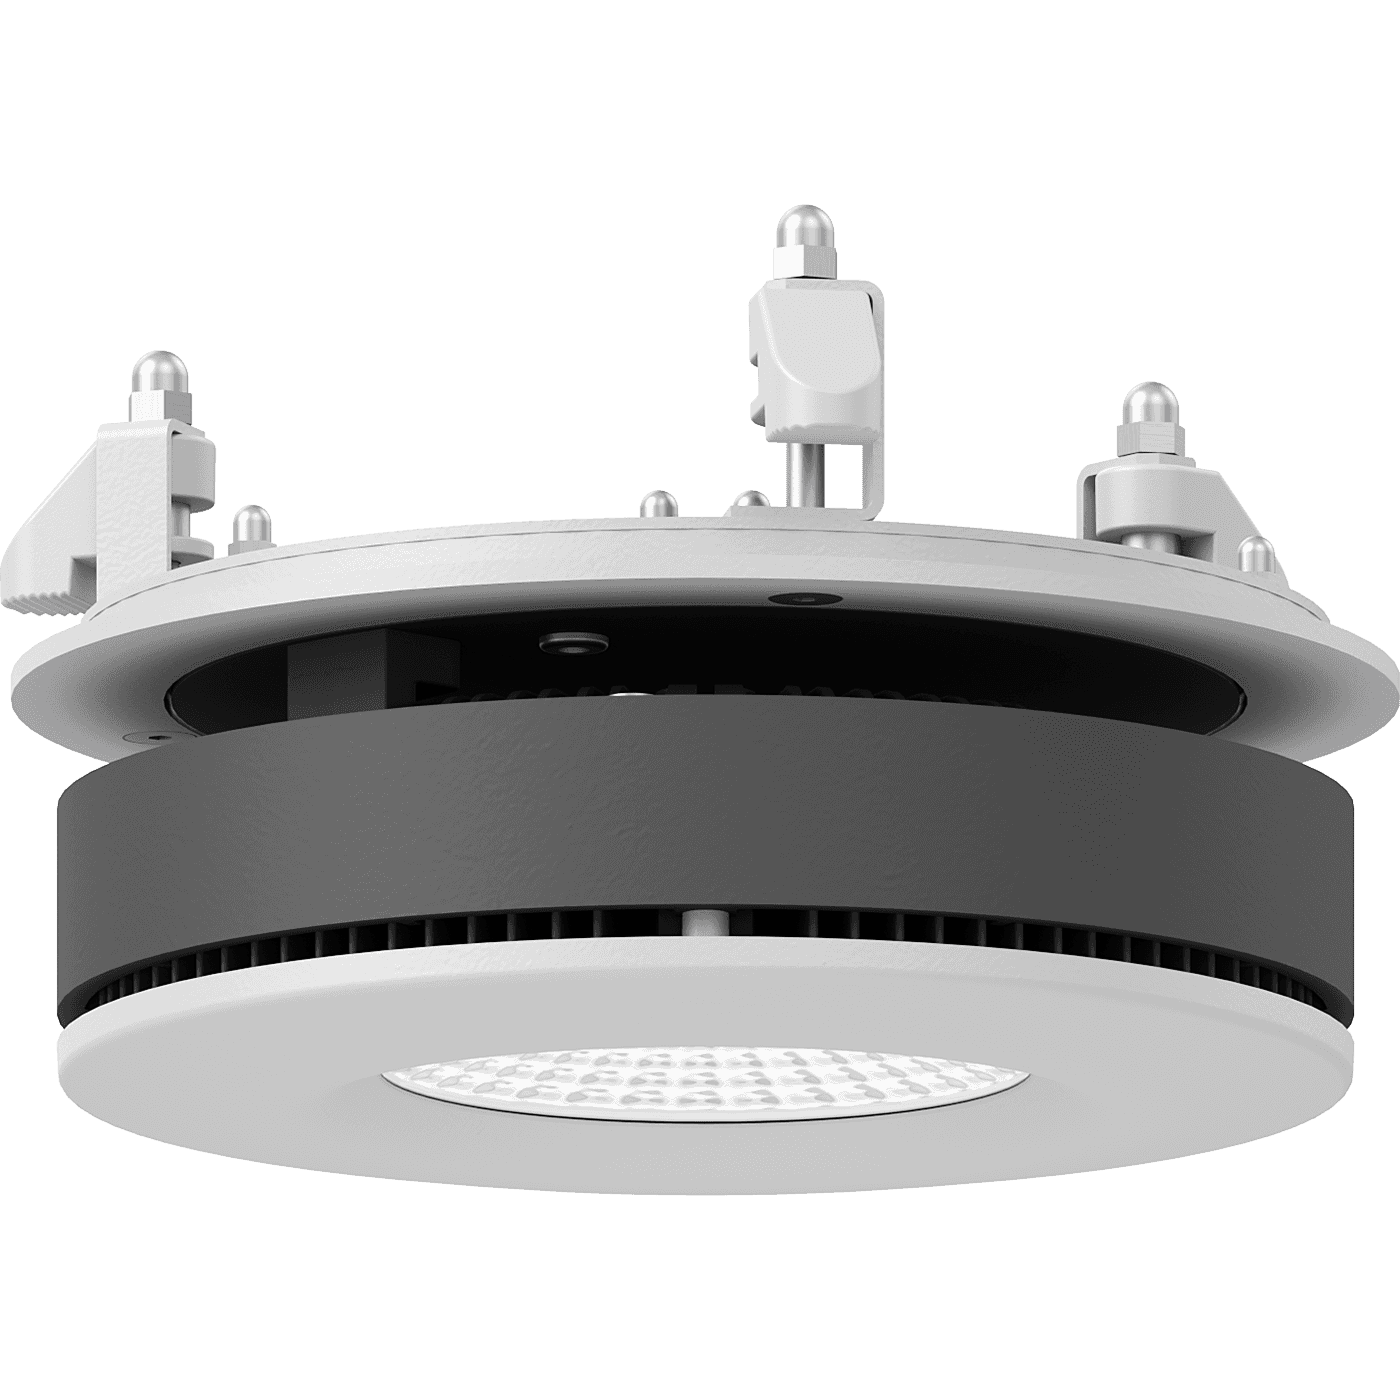 даунлайты UFO DL LED 25 D45 HFD 4000K, артикул 1170002830